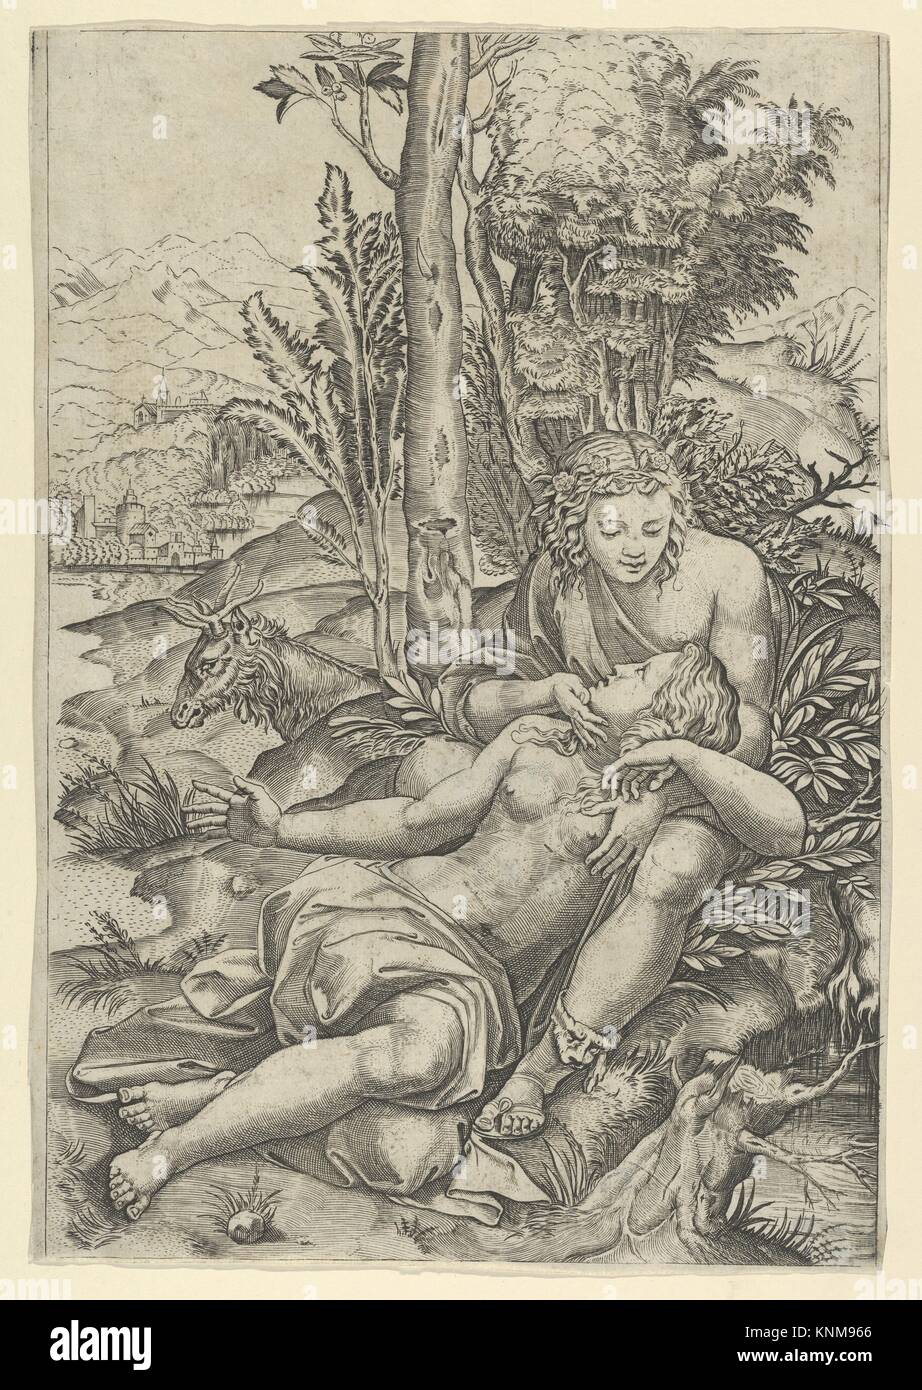 Medor y Angélica de Ludovico Ariosto "Orlando Furioso" o Venus y Adonis abrazando, situado dentro de un paisaje. Artista: Marcantonio Raimondi Foto de stock